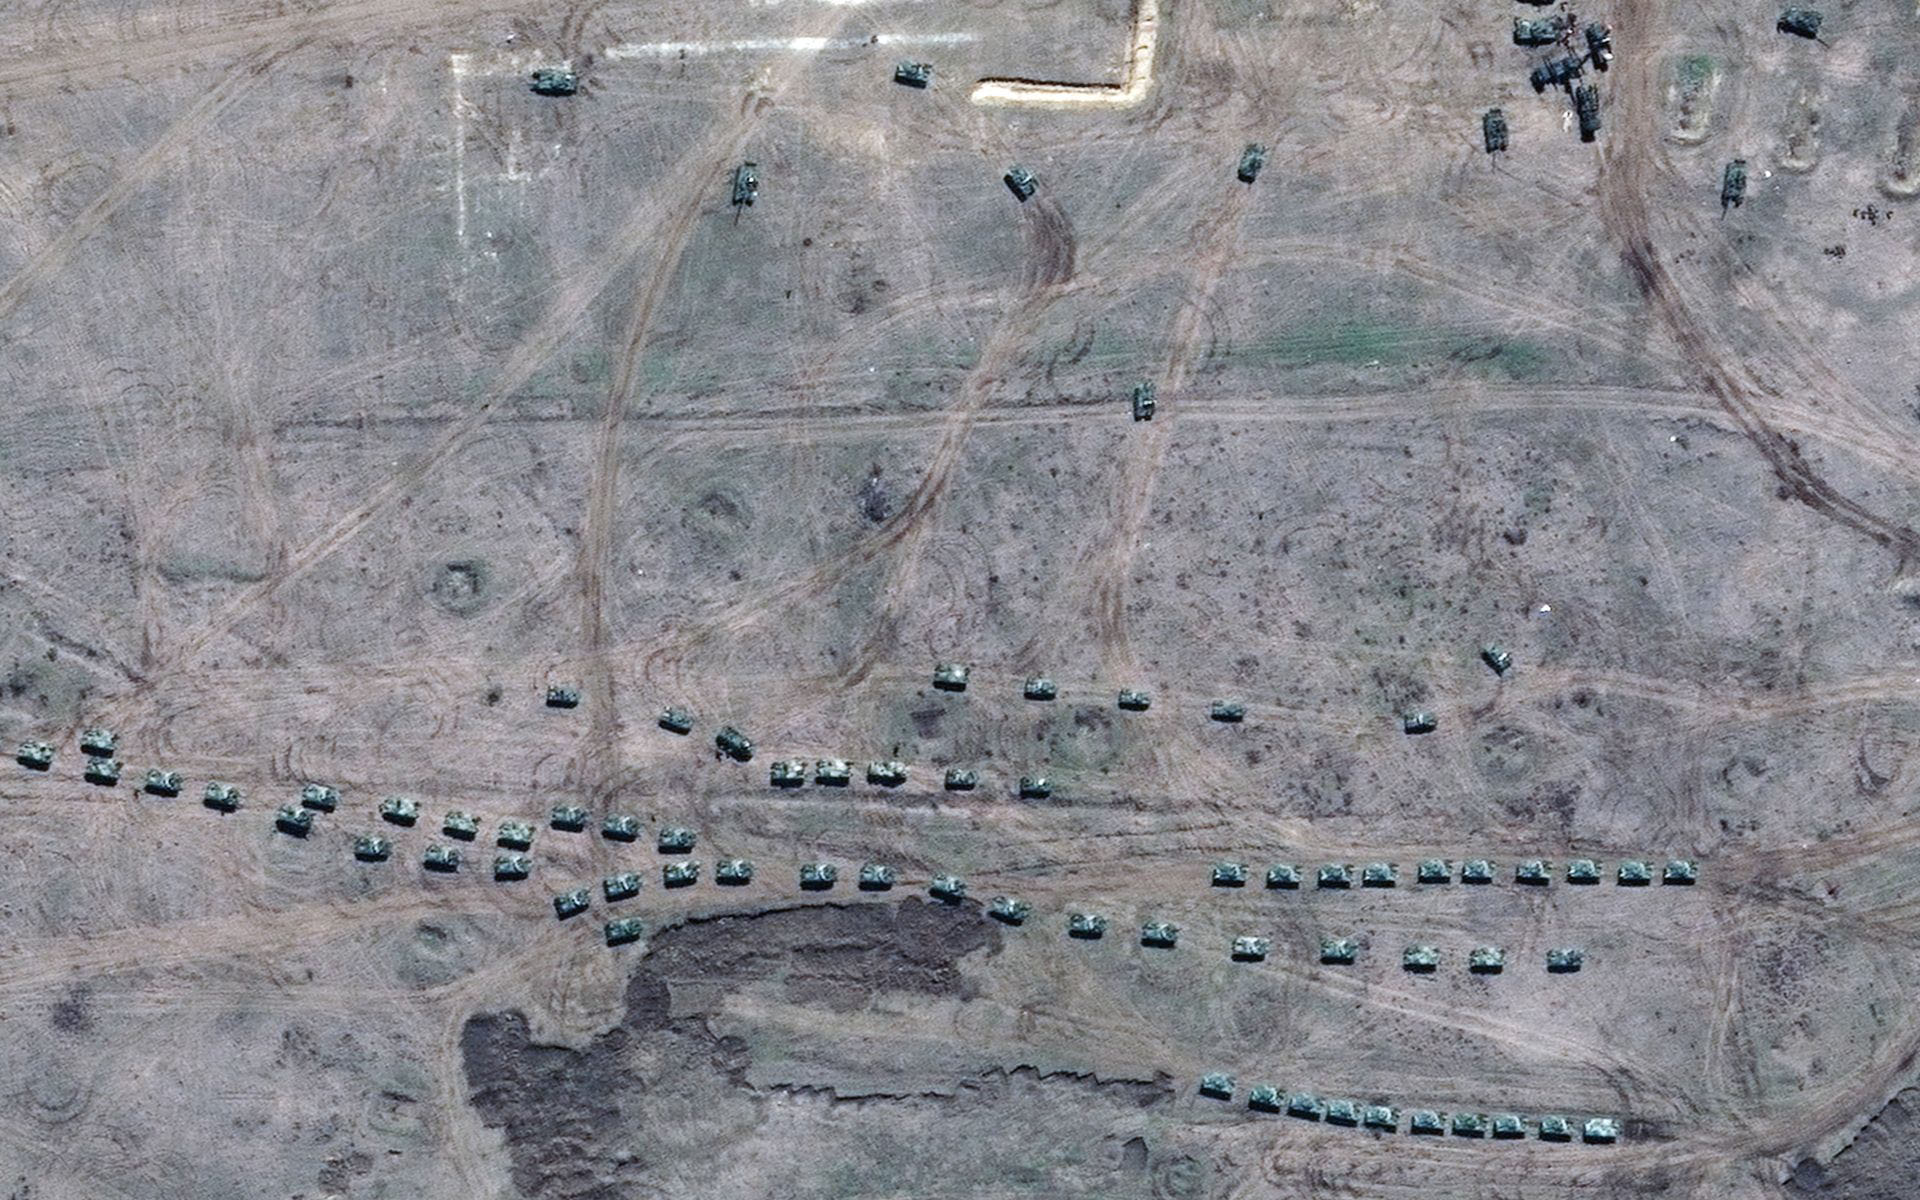 Fuerzas aerotransportadas rusas en el área de entrenamiento de Angarsky en Crimea. Imagen de satélite tomada el 15 de abril. (© 2021 Maxar Technologies)